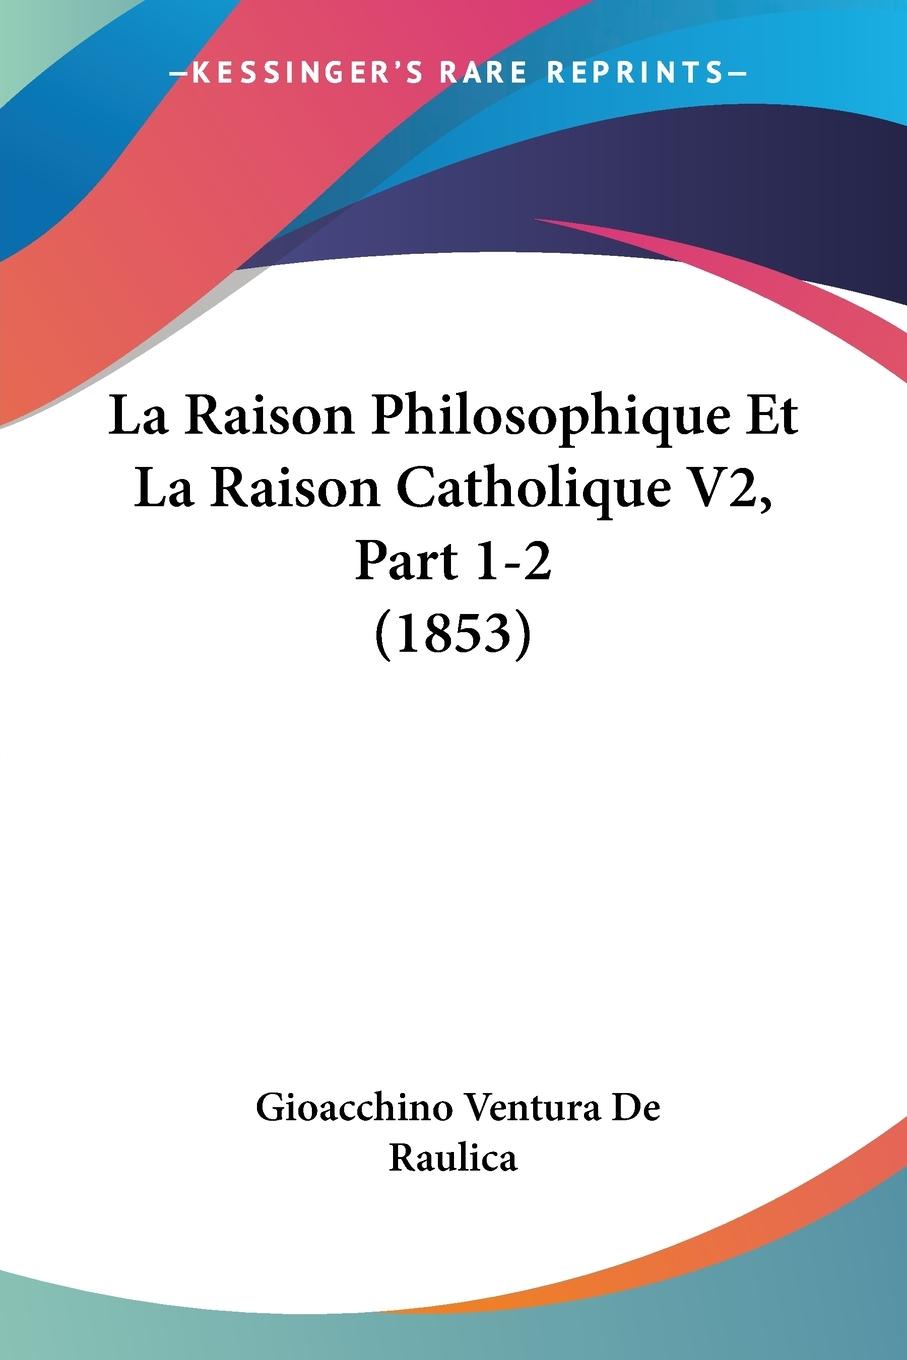 La Raison Philosophique Et La Raison Catholique V2, Part 1-2 (1853) - De Raulica, Gioacchino Ventura